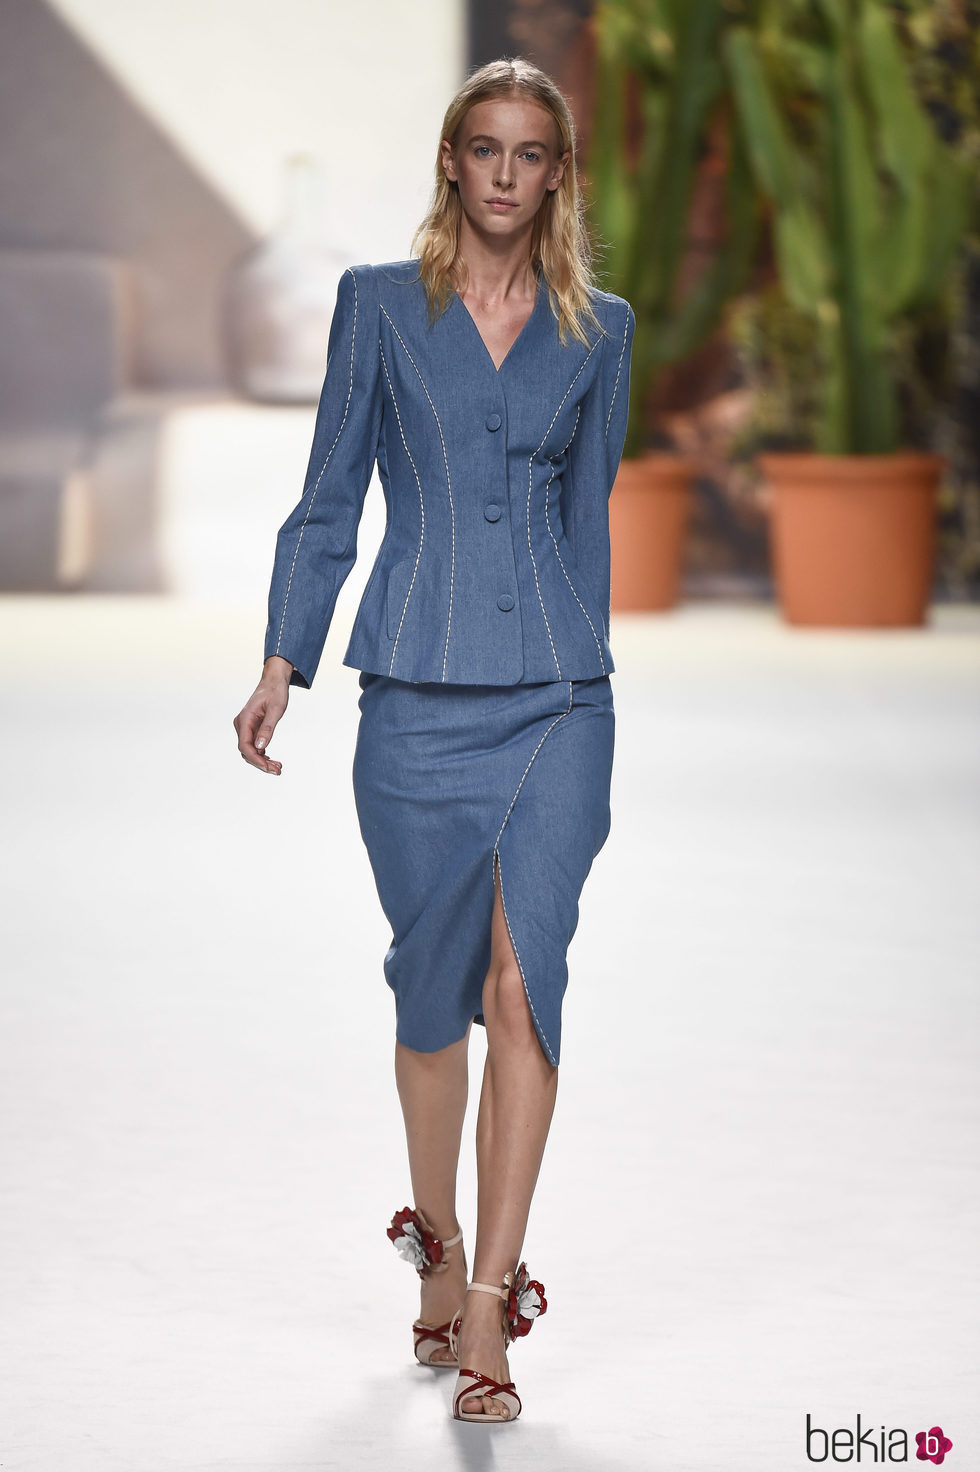 Traje falda azul marino de Roberto Verino de la campaña otoño/invierno 2018/2019 en la Madrid Fashion Week